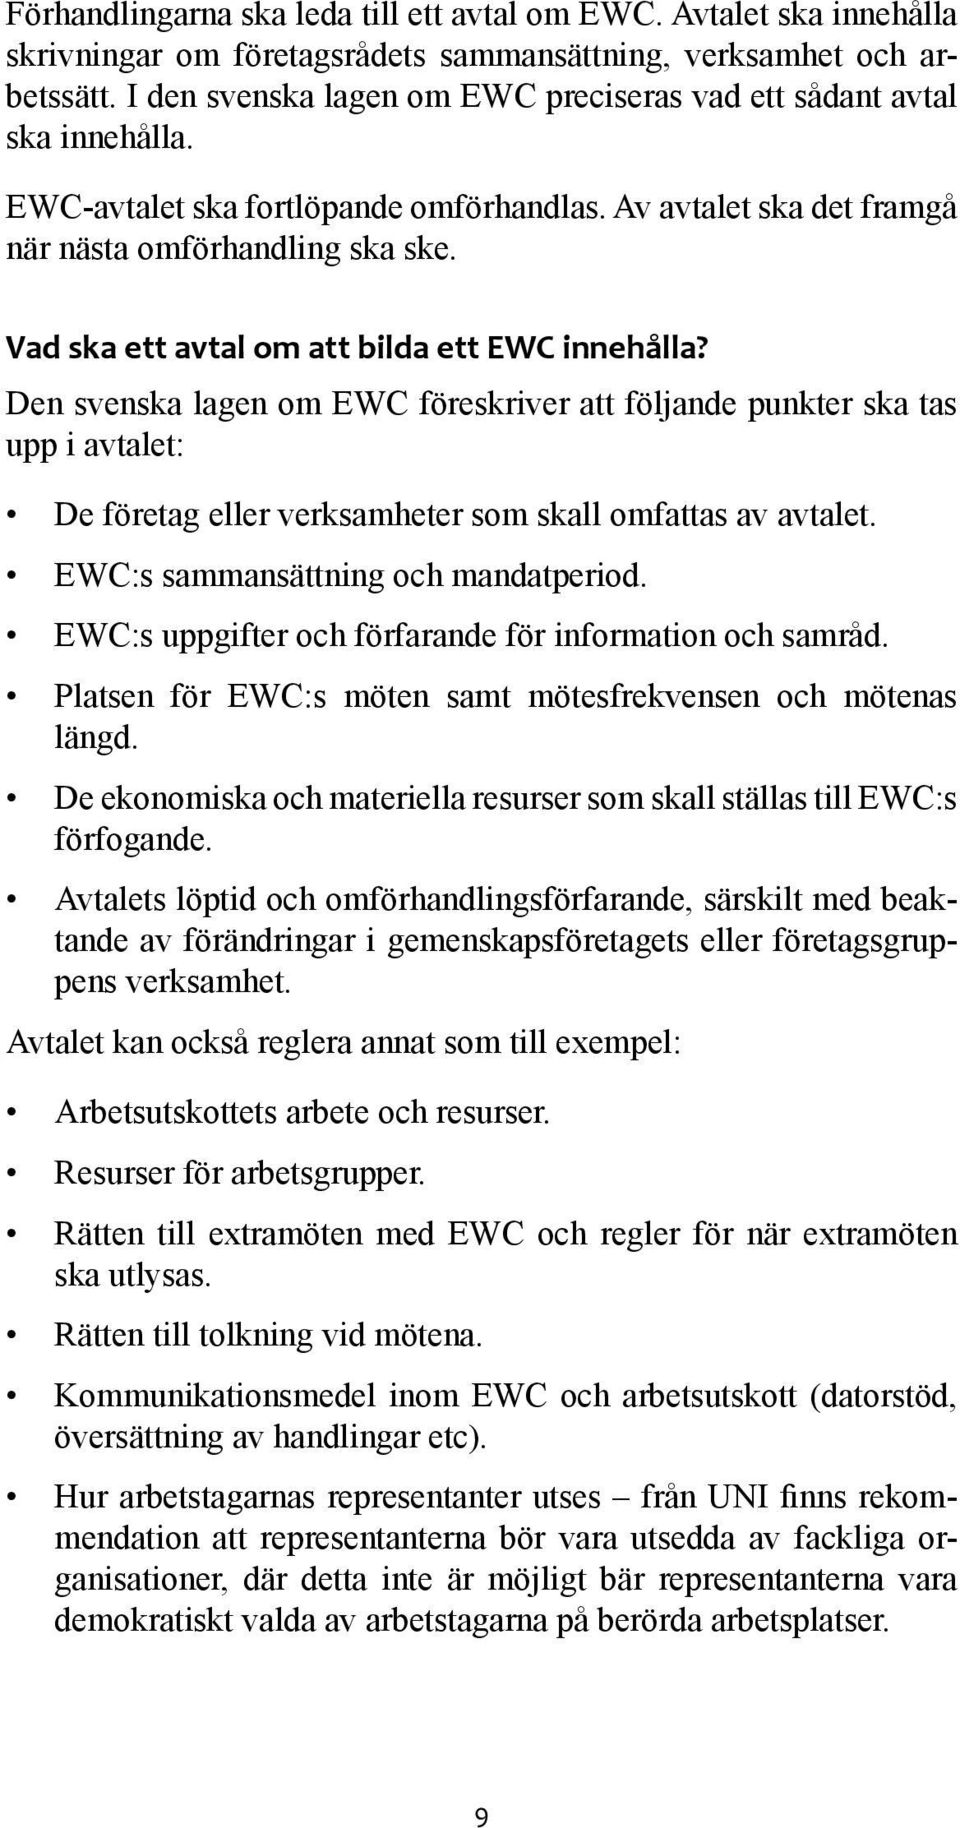 Vad ska ett avtal om att bilda ett EWC innehålla? Den svenska lagen om EWC föreskriver att följande punkter ska tas upp i avtalet: De företag eller verksamheter som skall omfattas av avtalet.